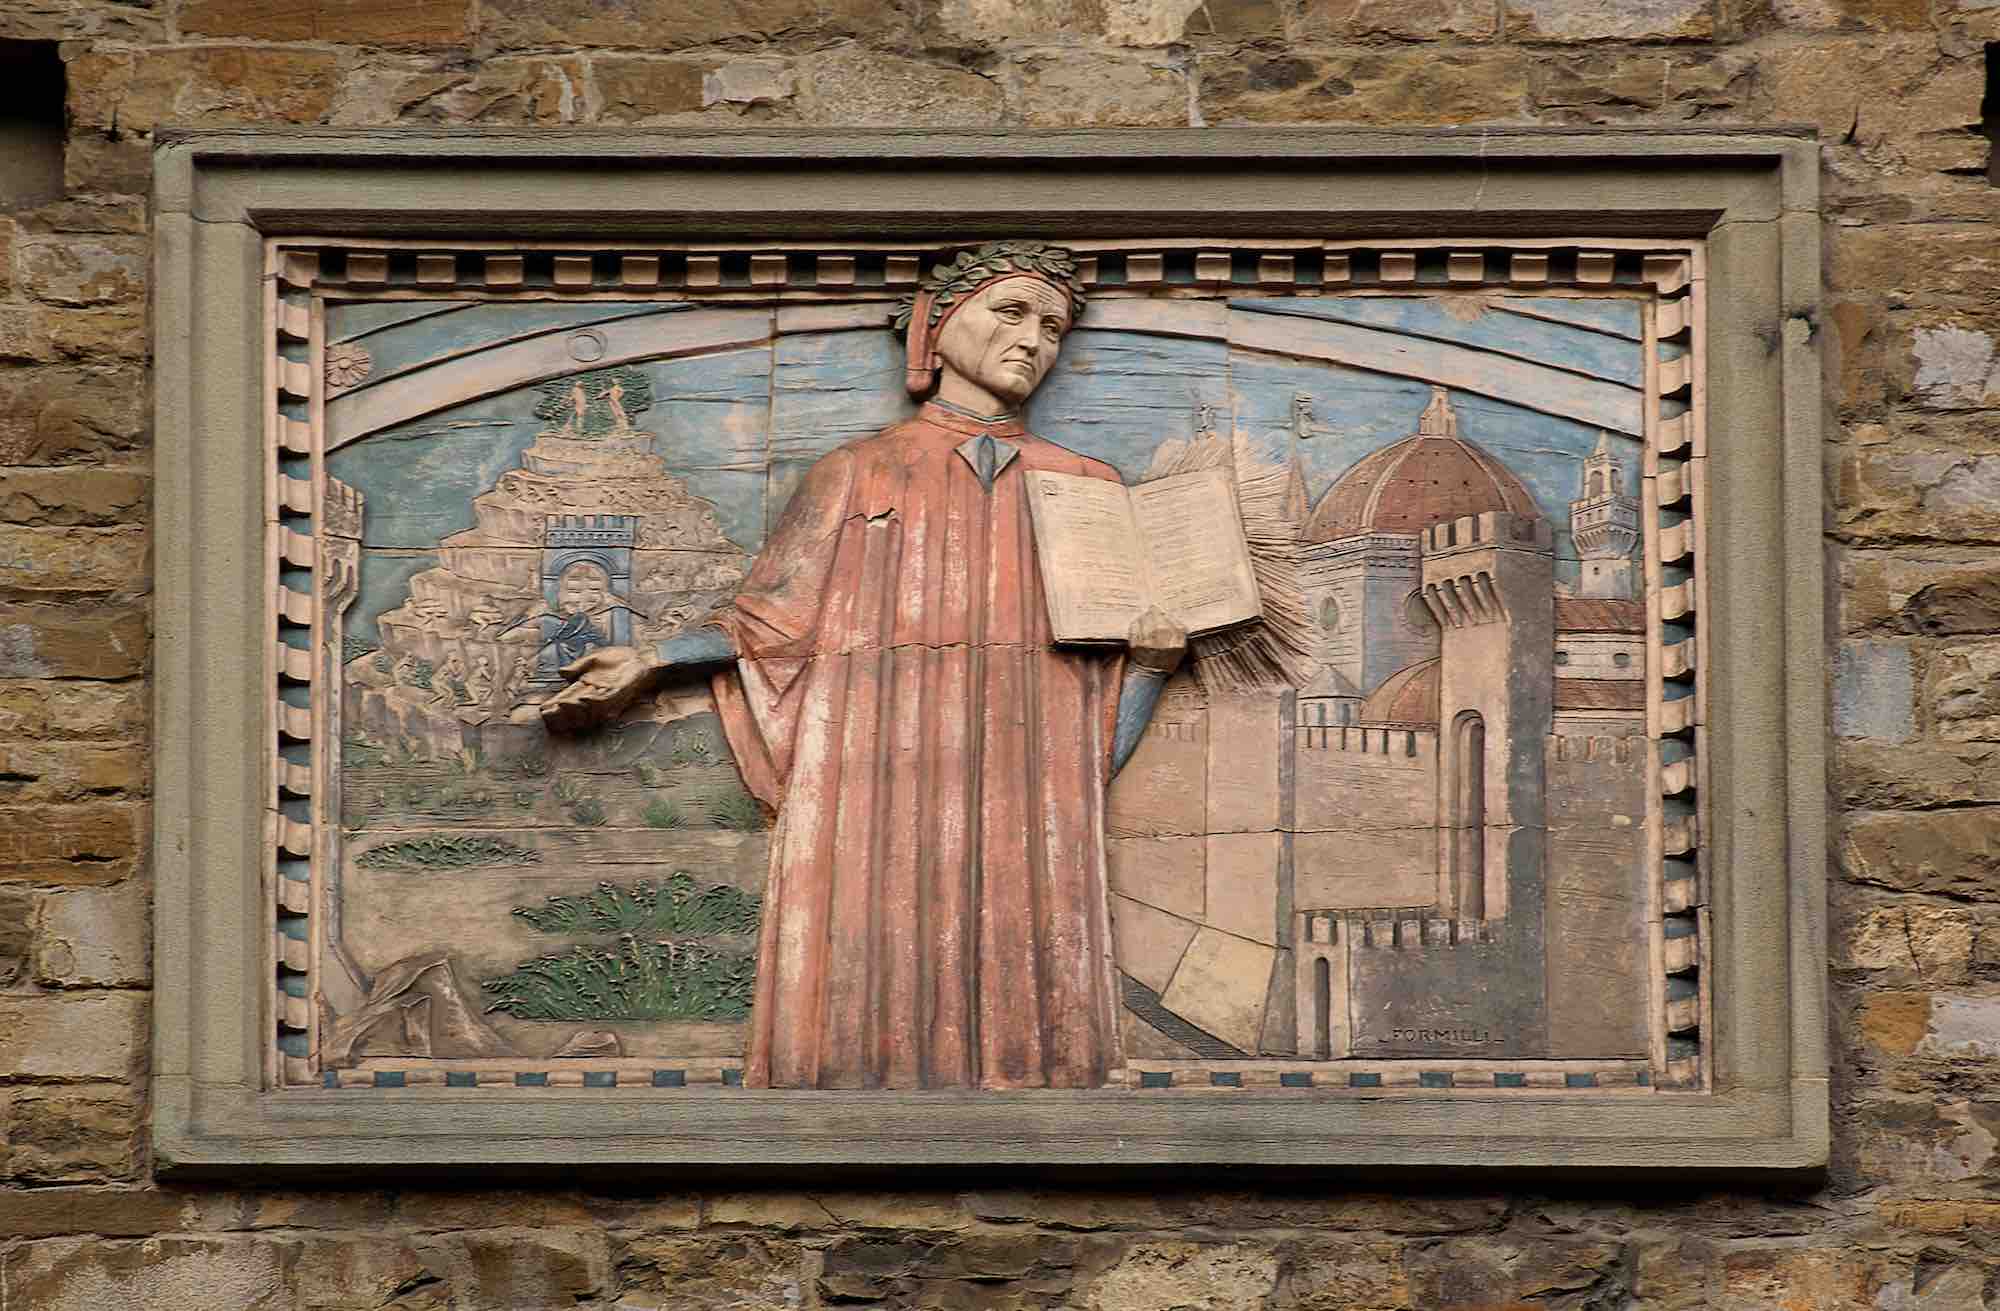 Bassorilievo rappresentante Dante e la Commedia, su un palazzo di Firenze